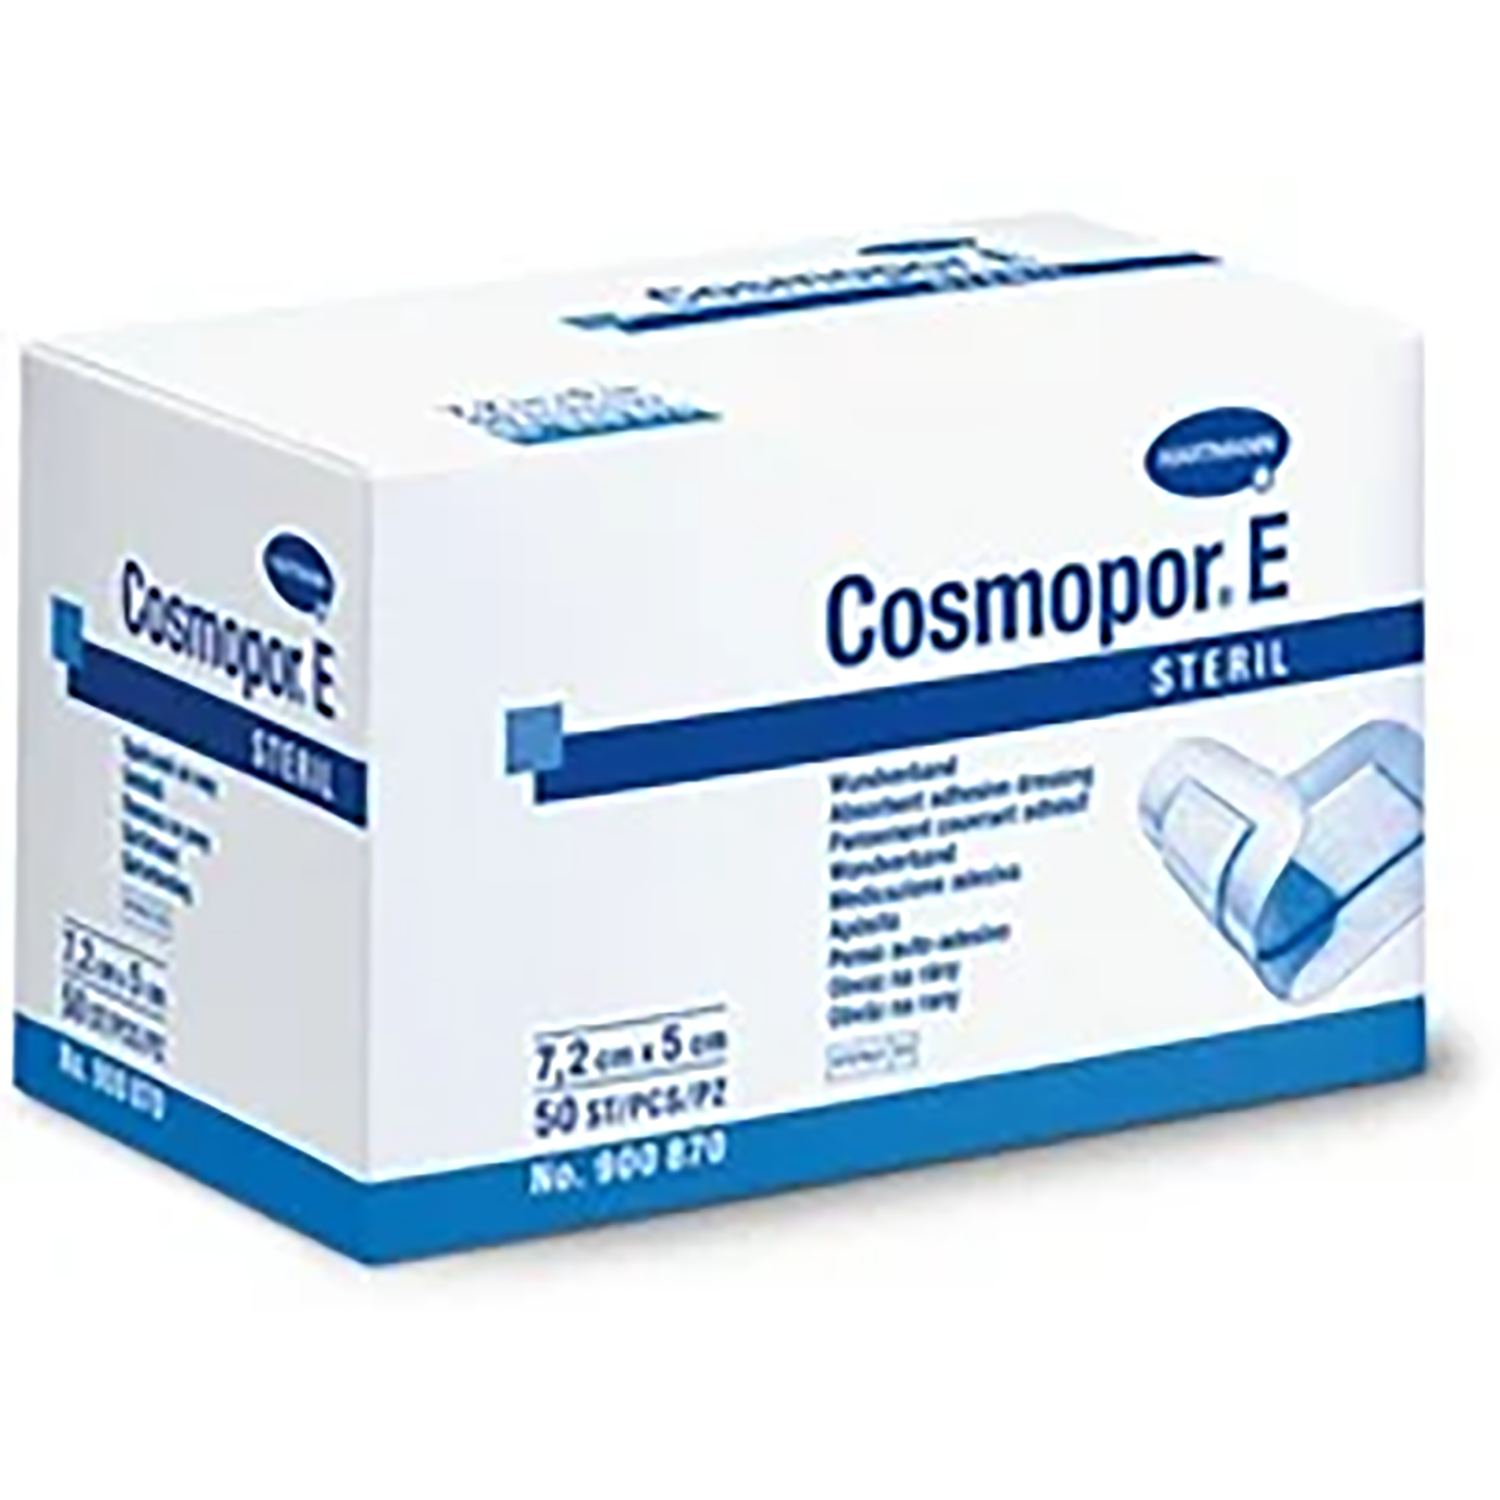 Cosmopor E Dressing | 15 x 8cm | Pack of 25